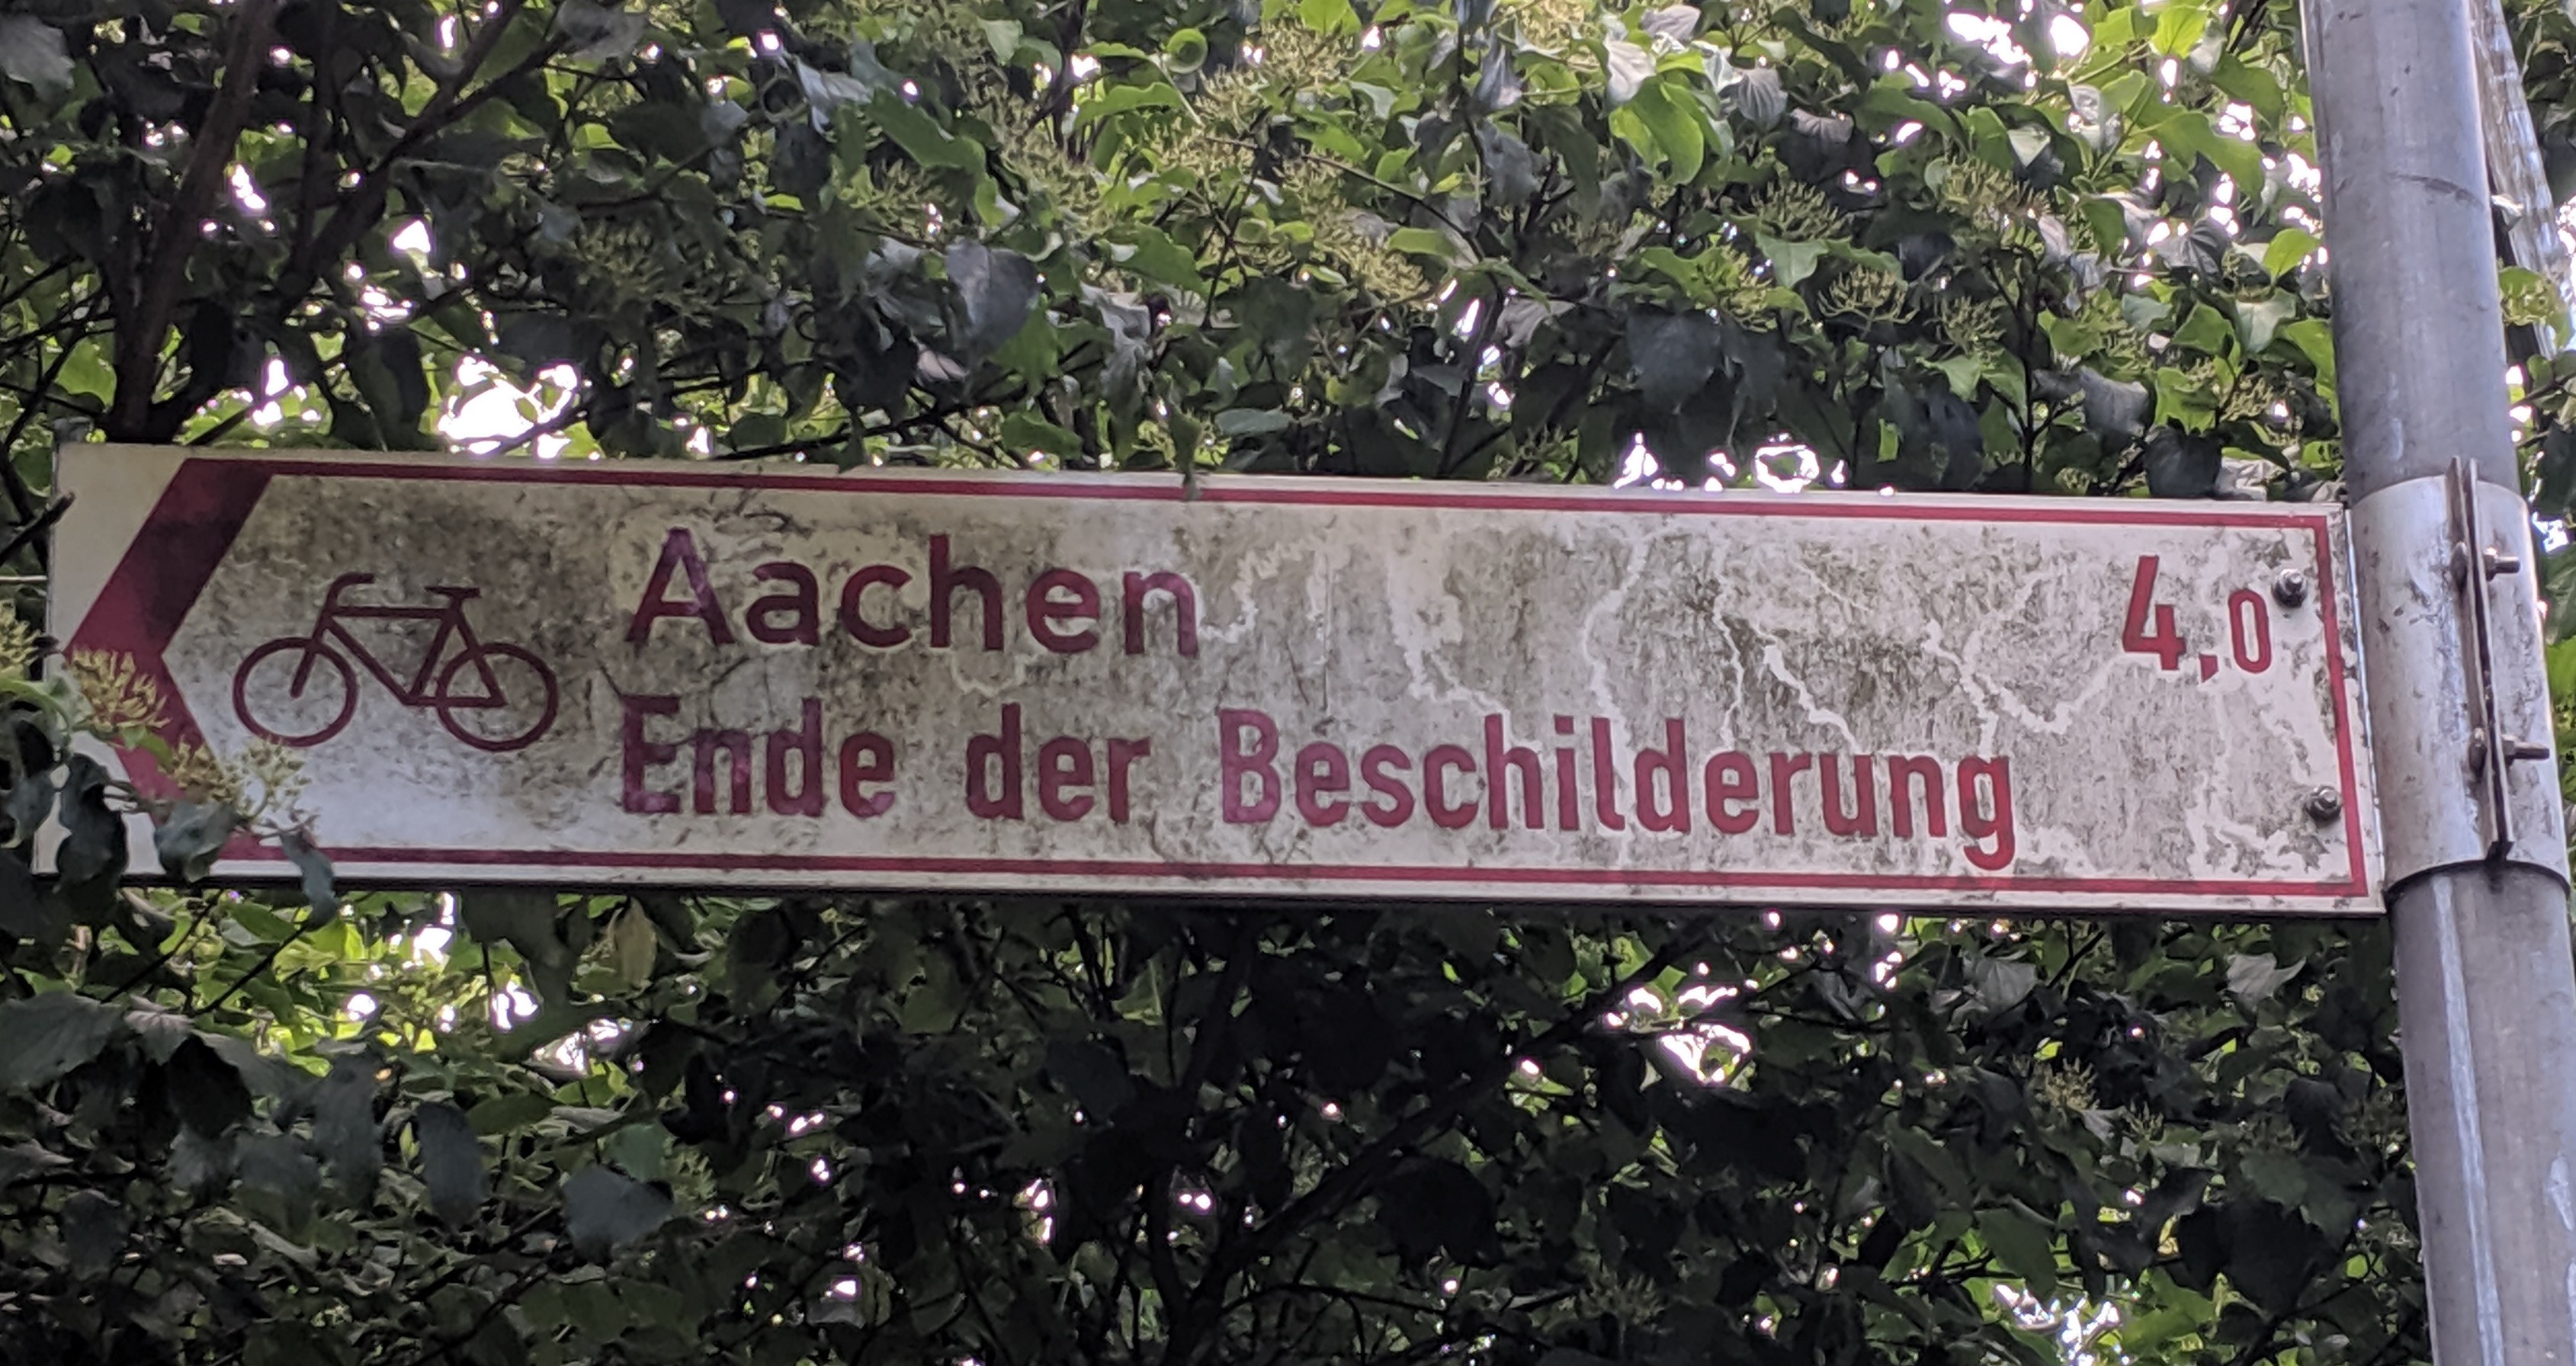 Aachen - Ende der Beschilderung